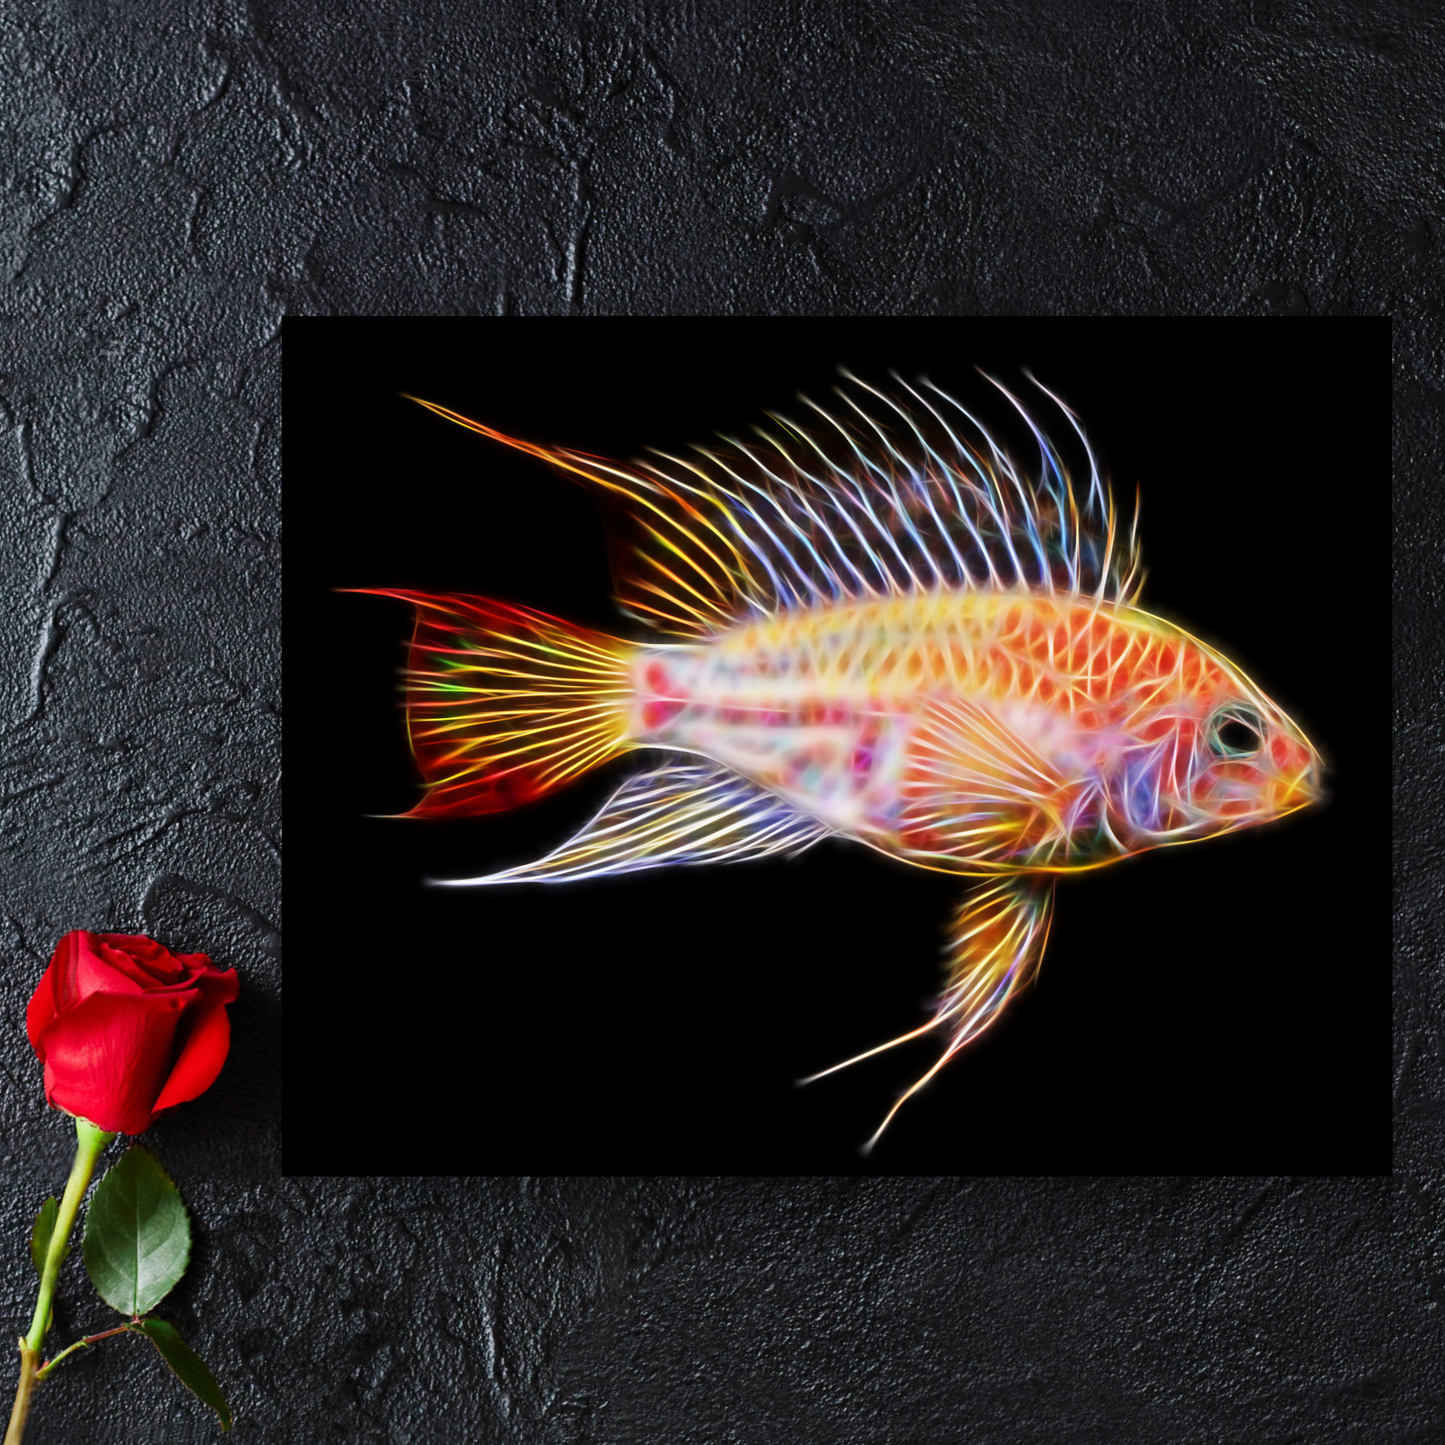 Gold Viejita Apistogramma Cichlid Fish Metal Wall Plaque.